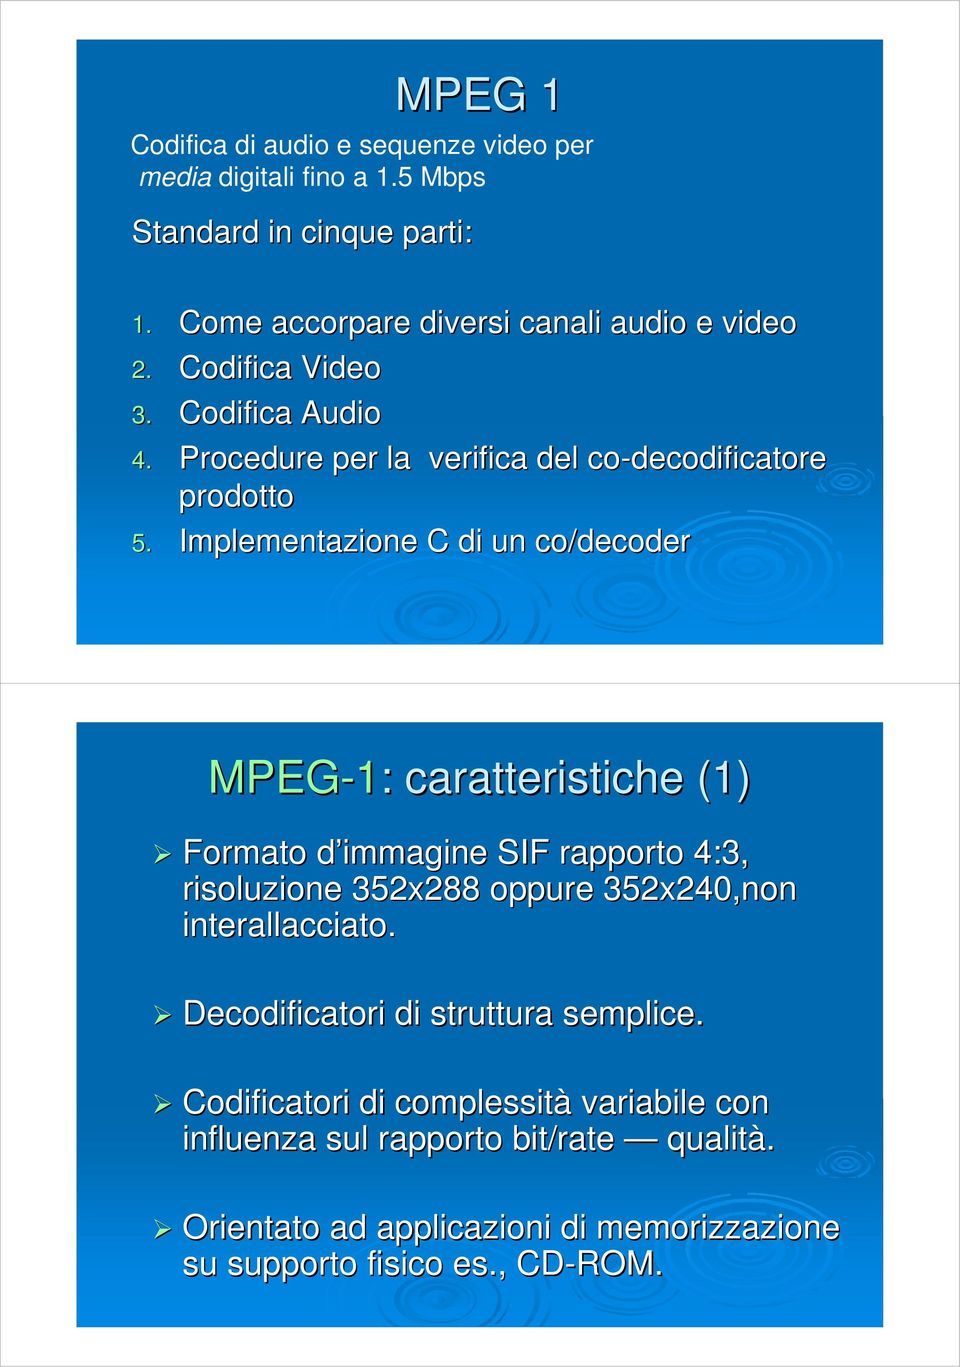 Implementazione C di un co/decoder MPEG-1: : caratteristiche (1) Formato d immagine SIF rapporto 4:3, risoluzione 352x288 oppure 352x240,non